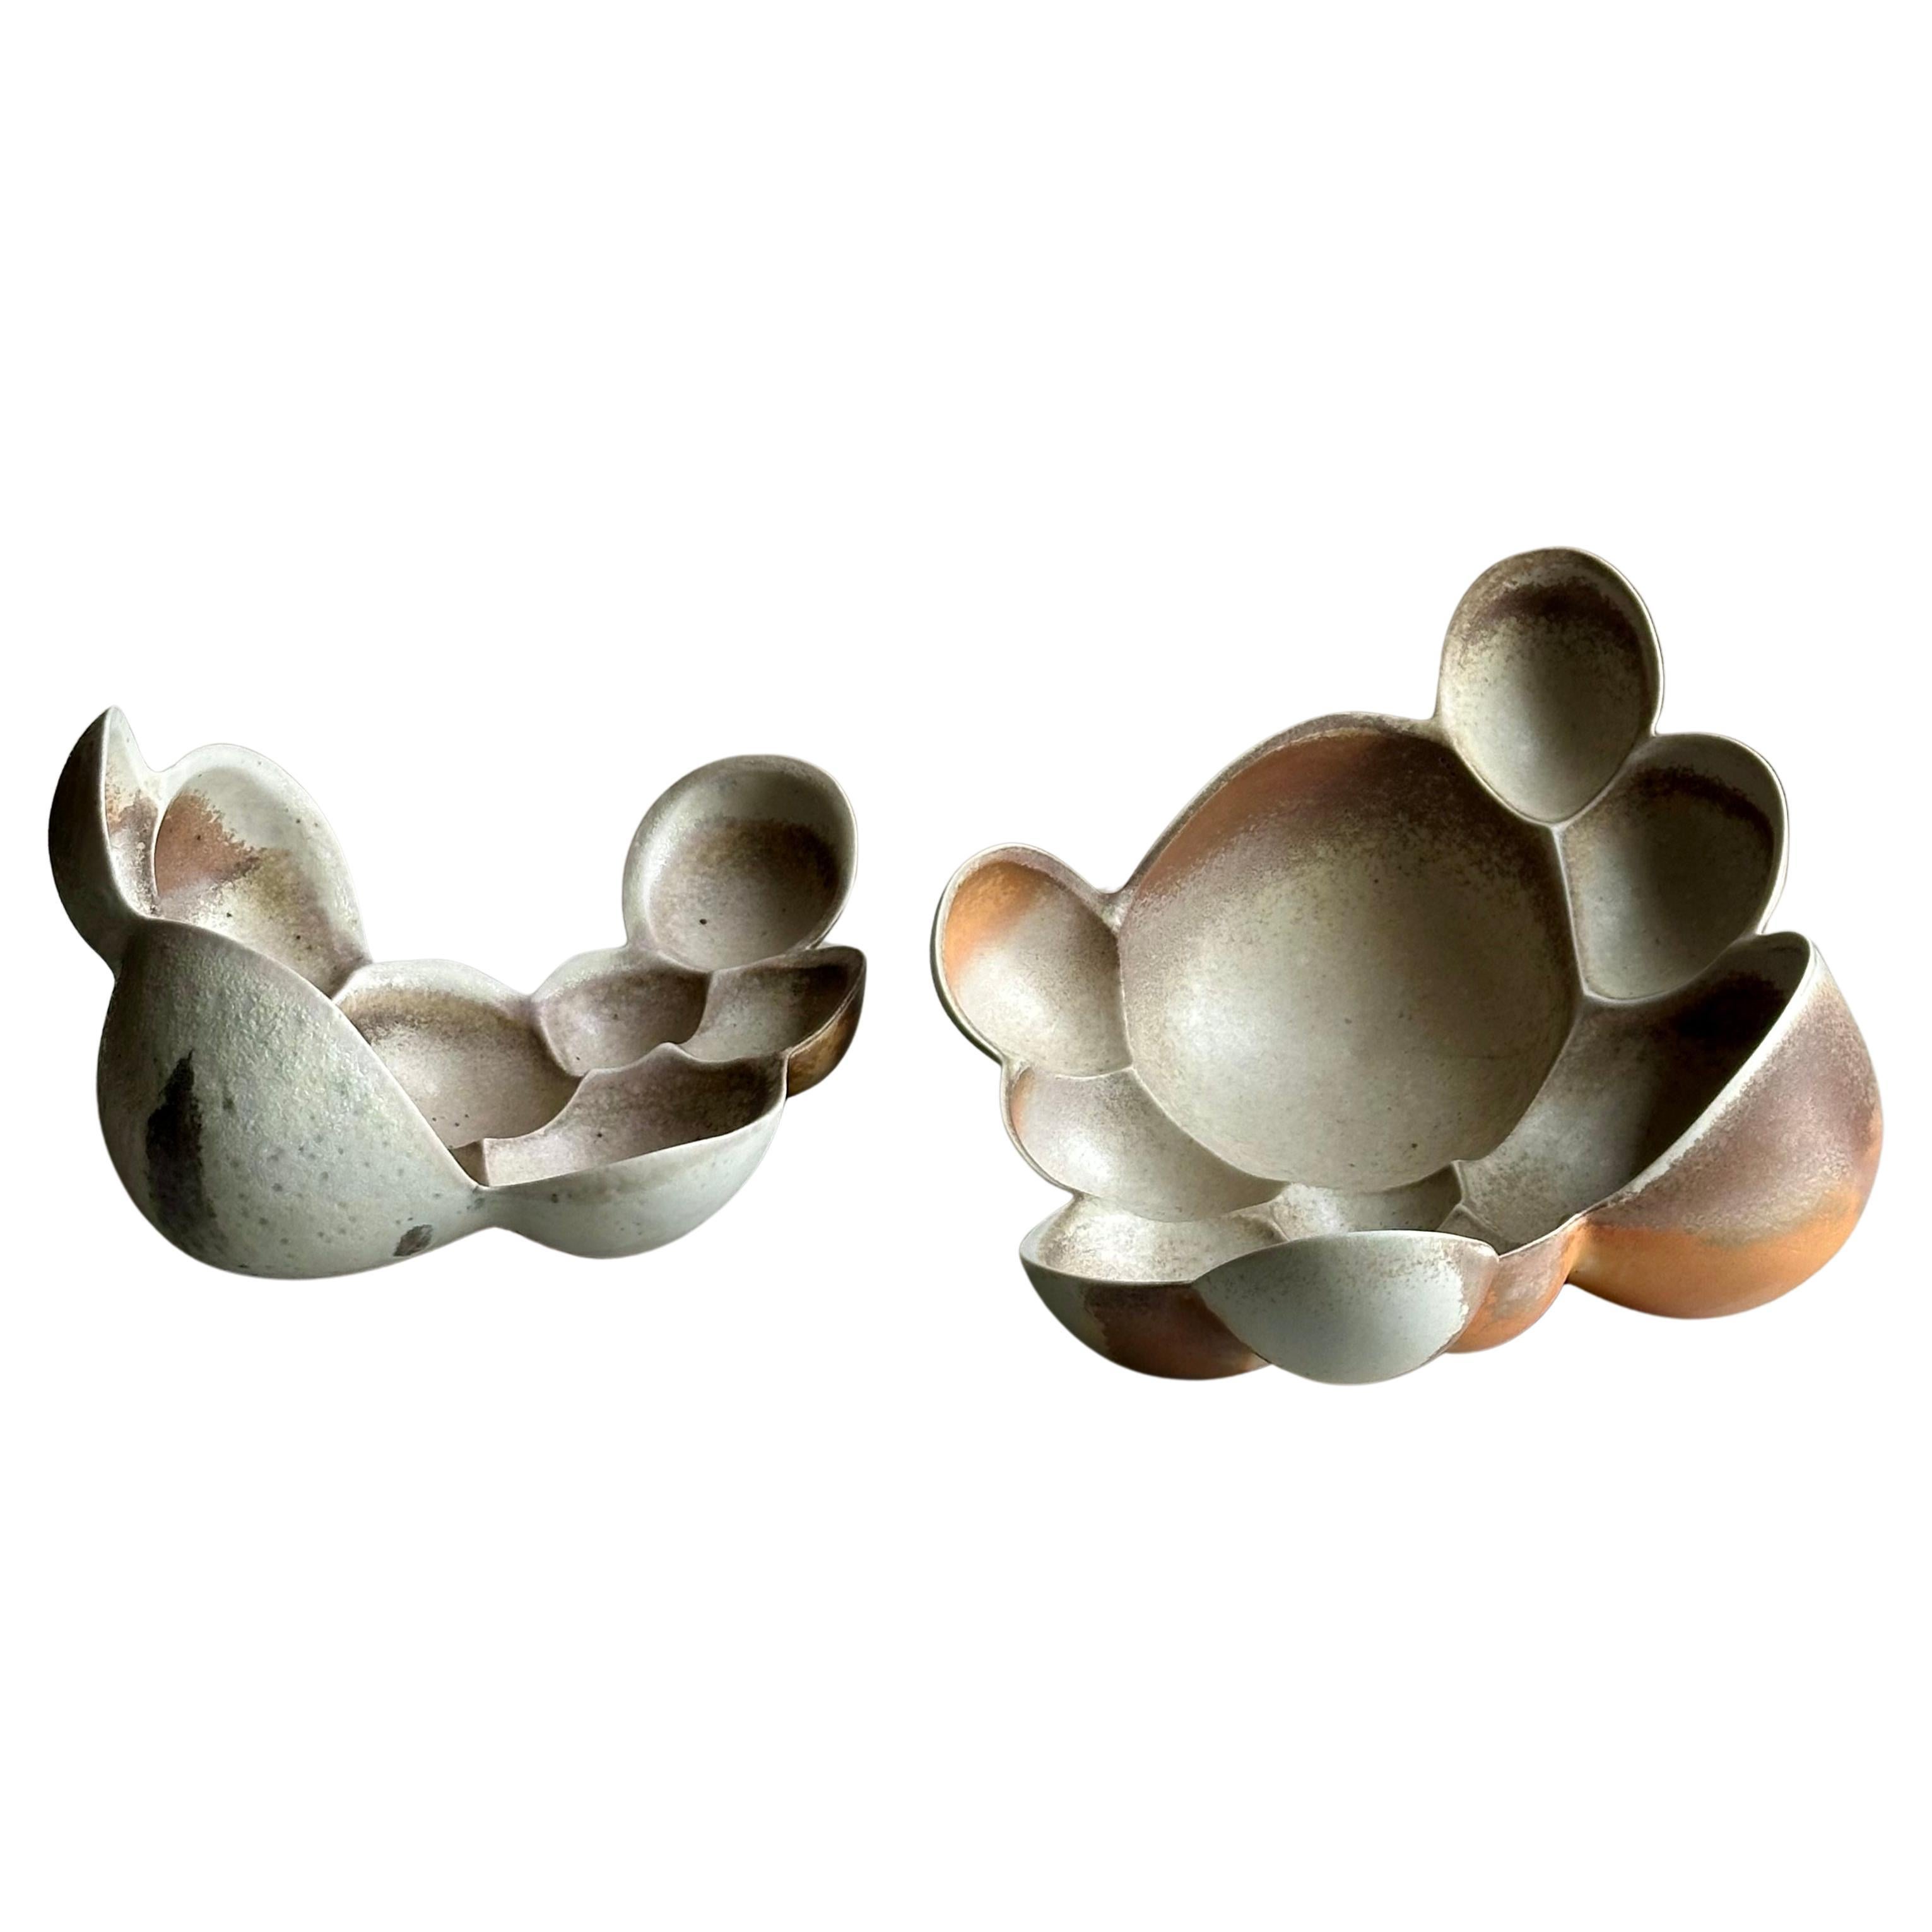 Zoë Powell, Pair of Wood-Fired Porcelain Vessels, Vestige Series